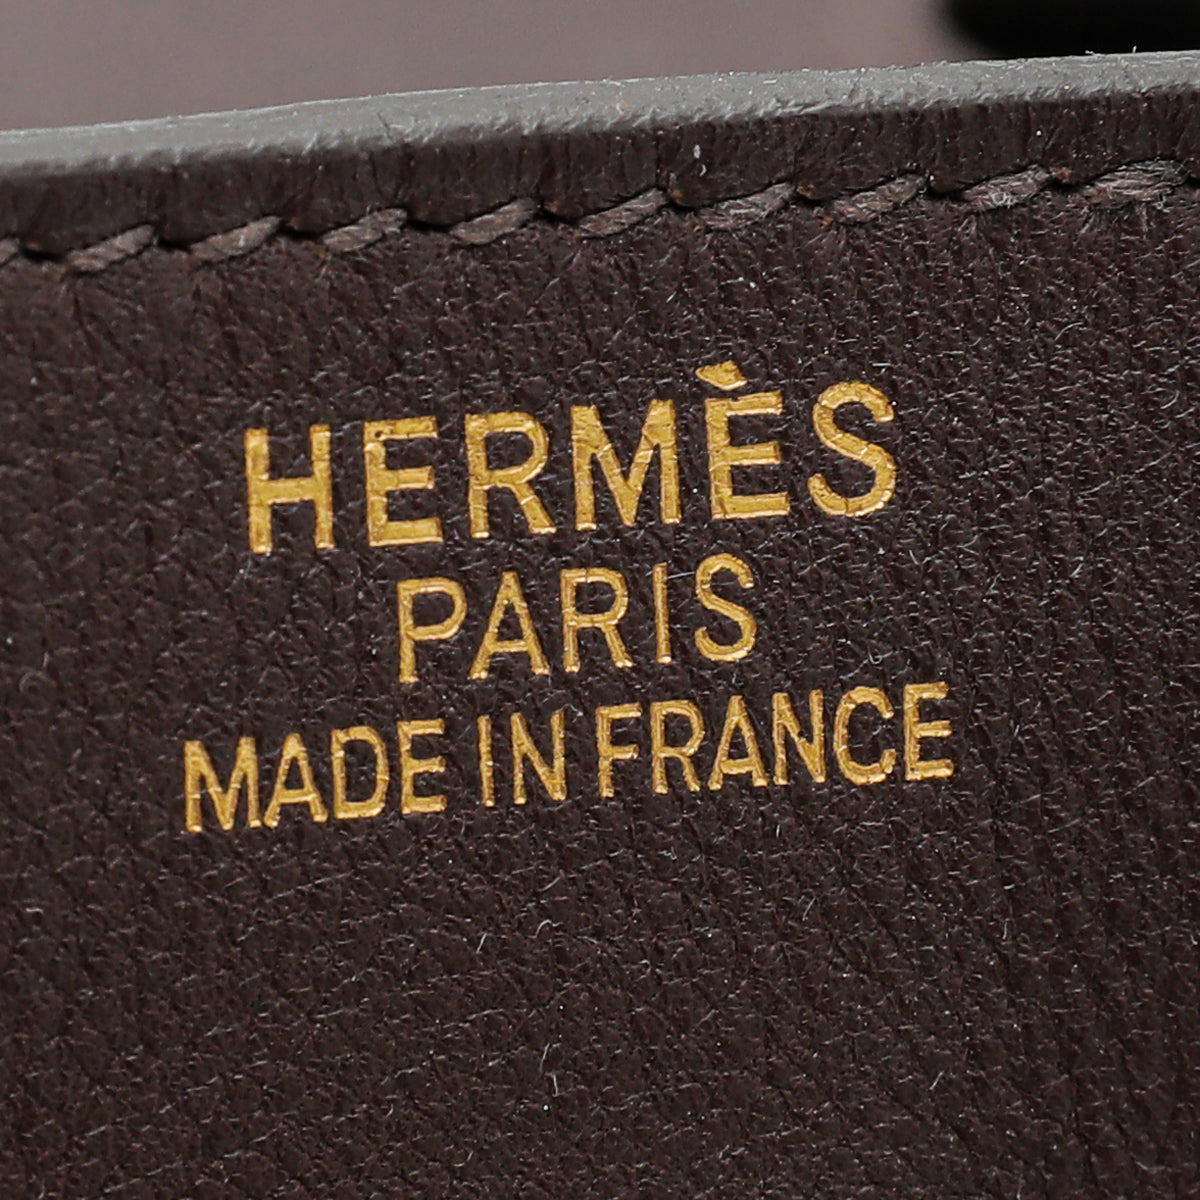 Hermes Bordeaux Swift Birkin 35 Bag